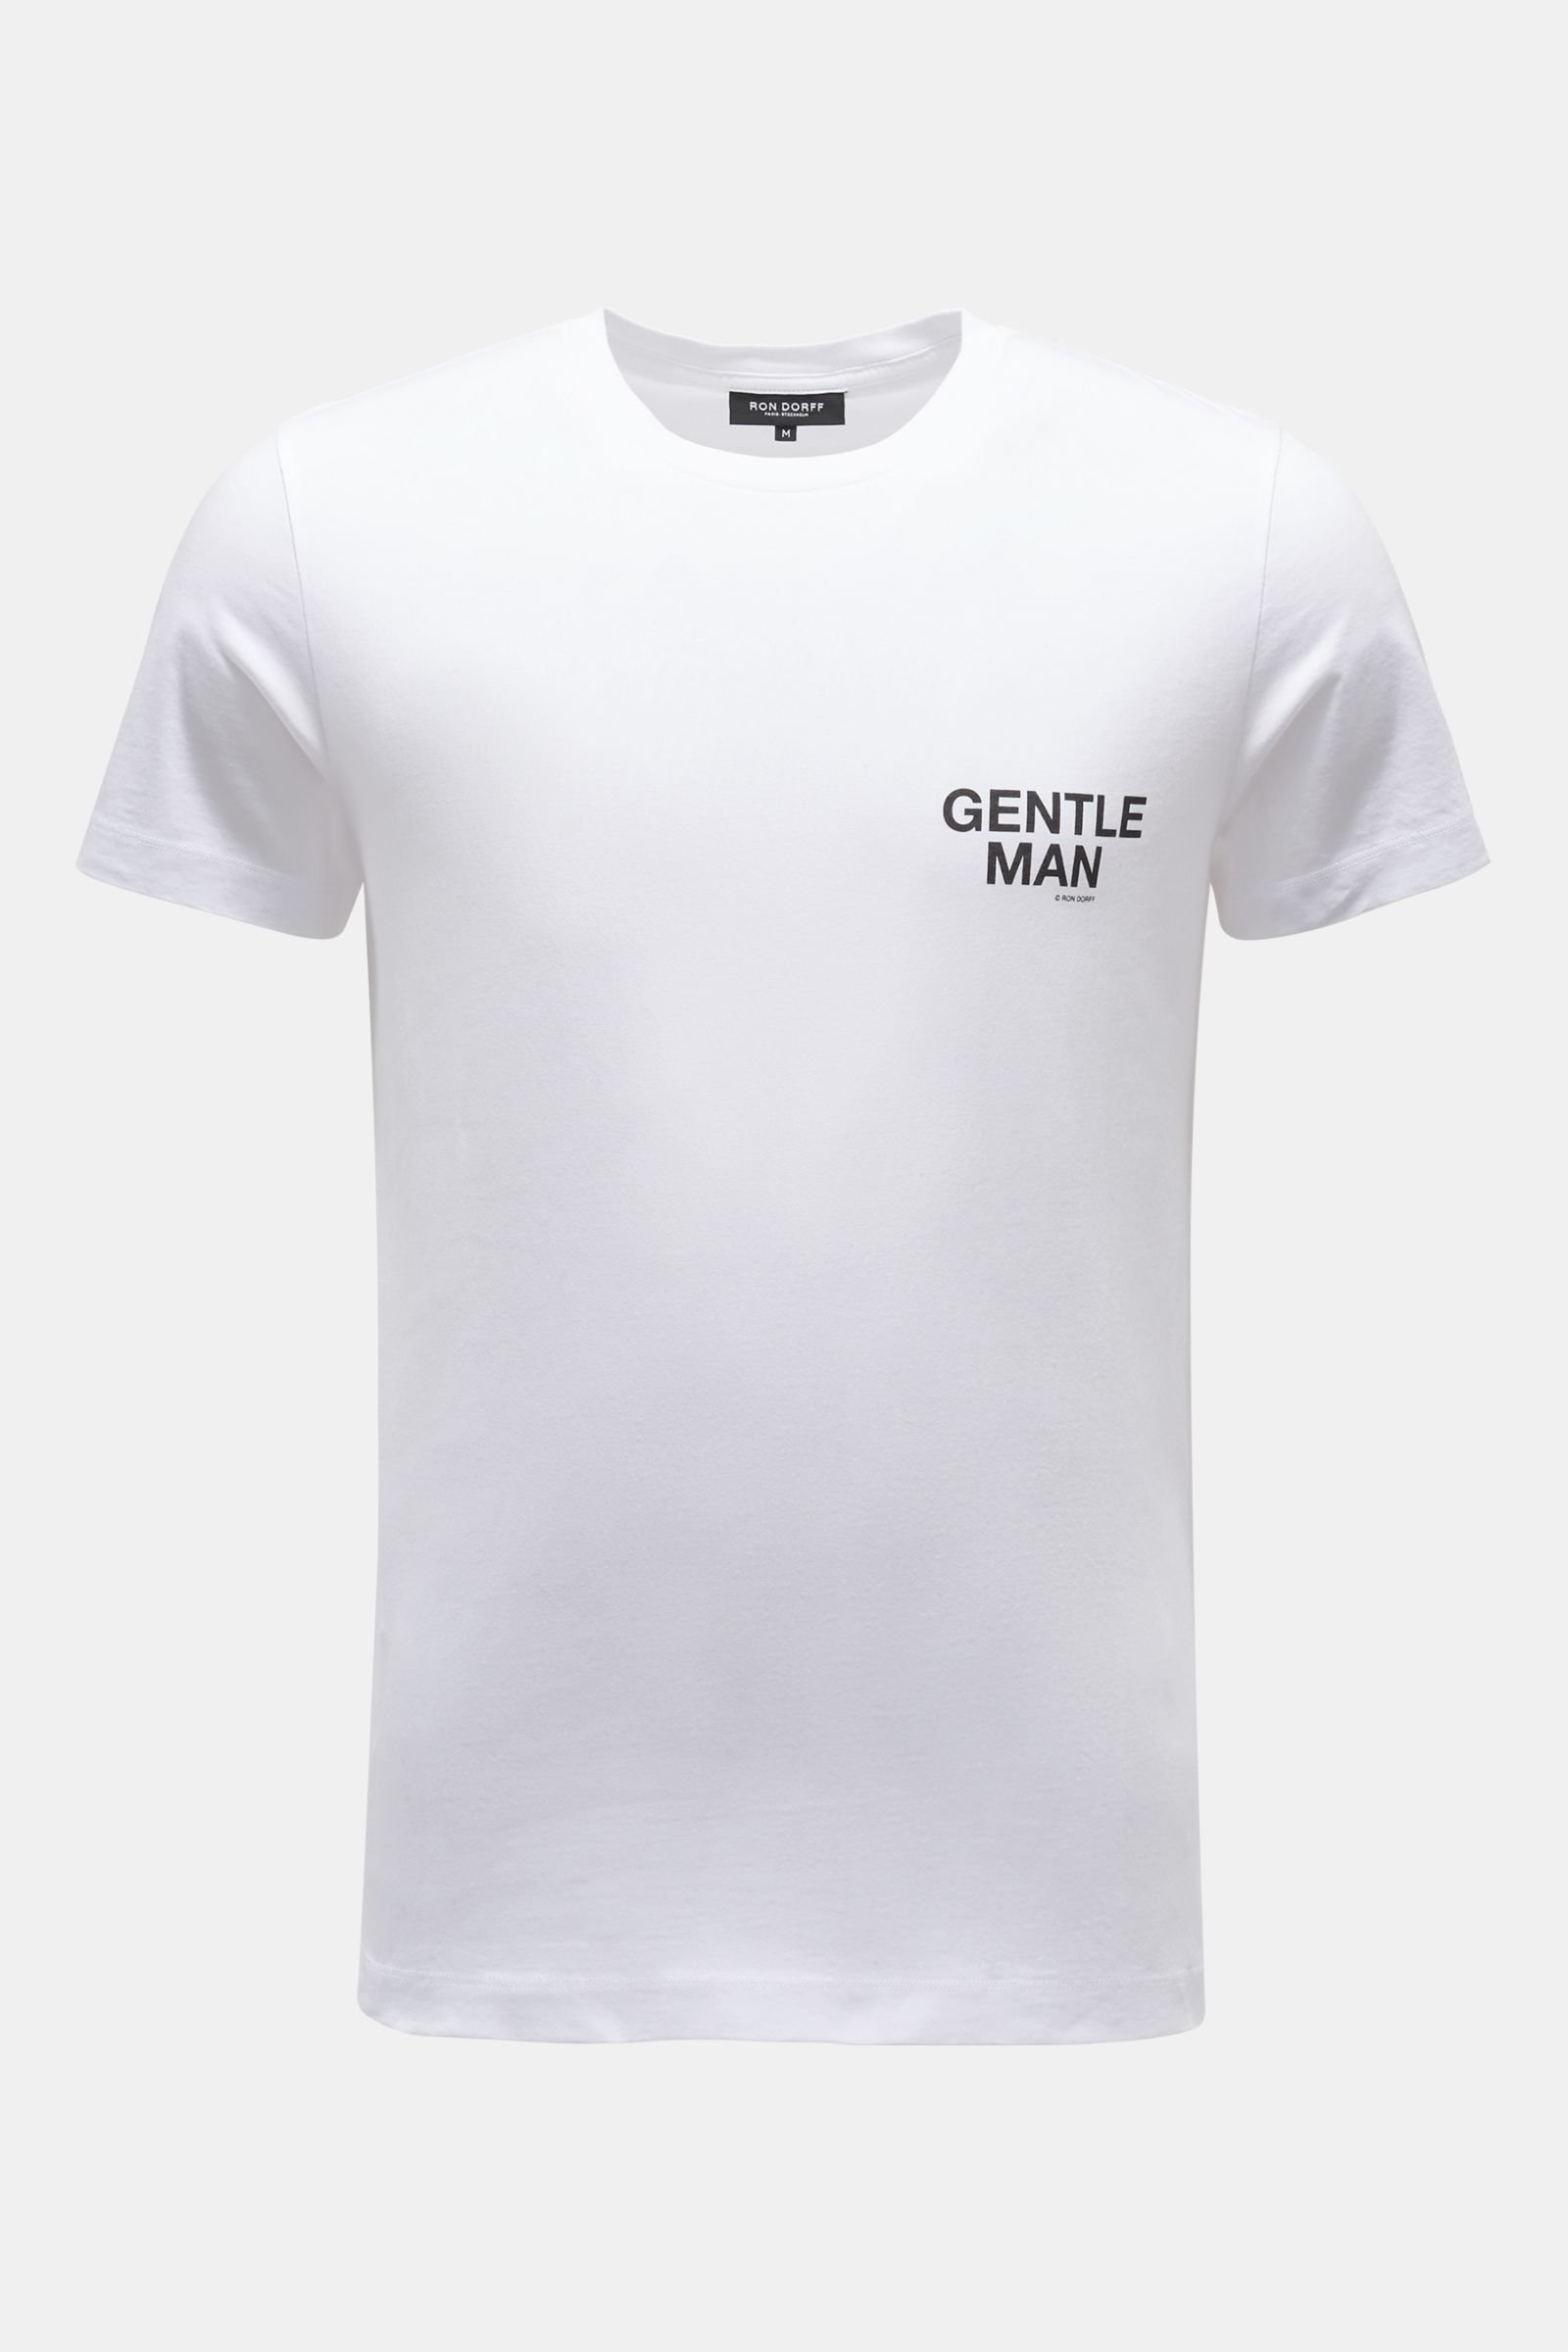 Rundhals-T-Shirt 'Gentle Man' weiß